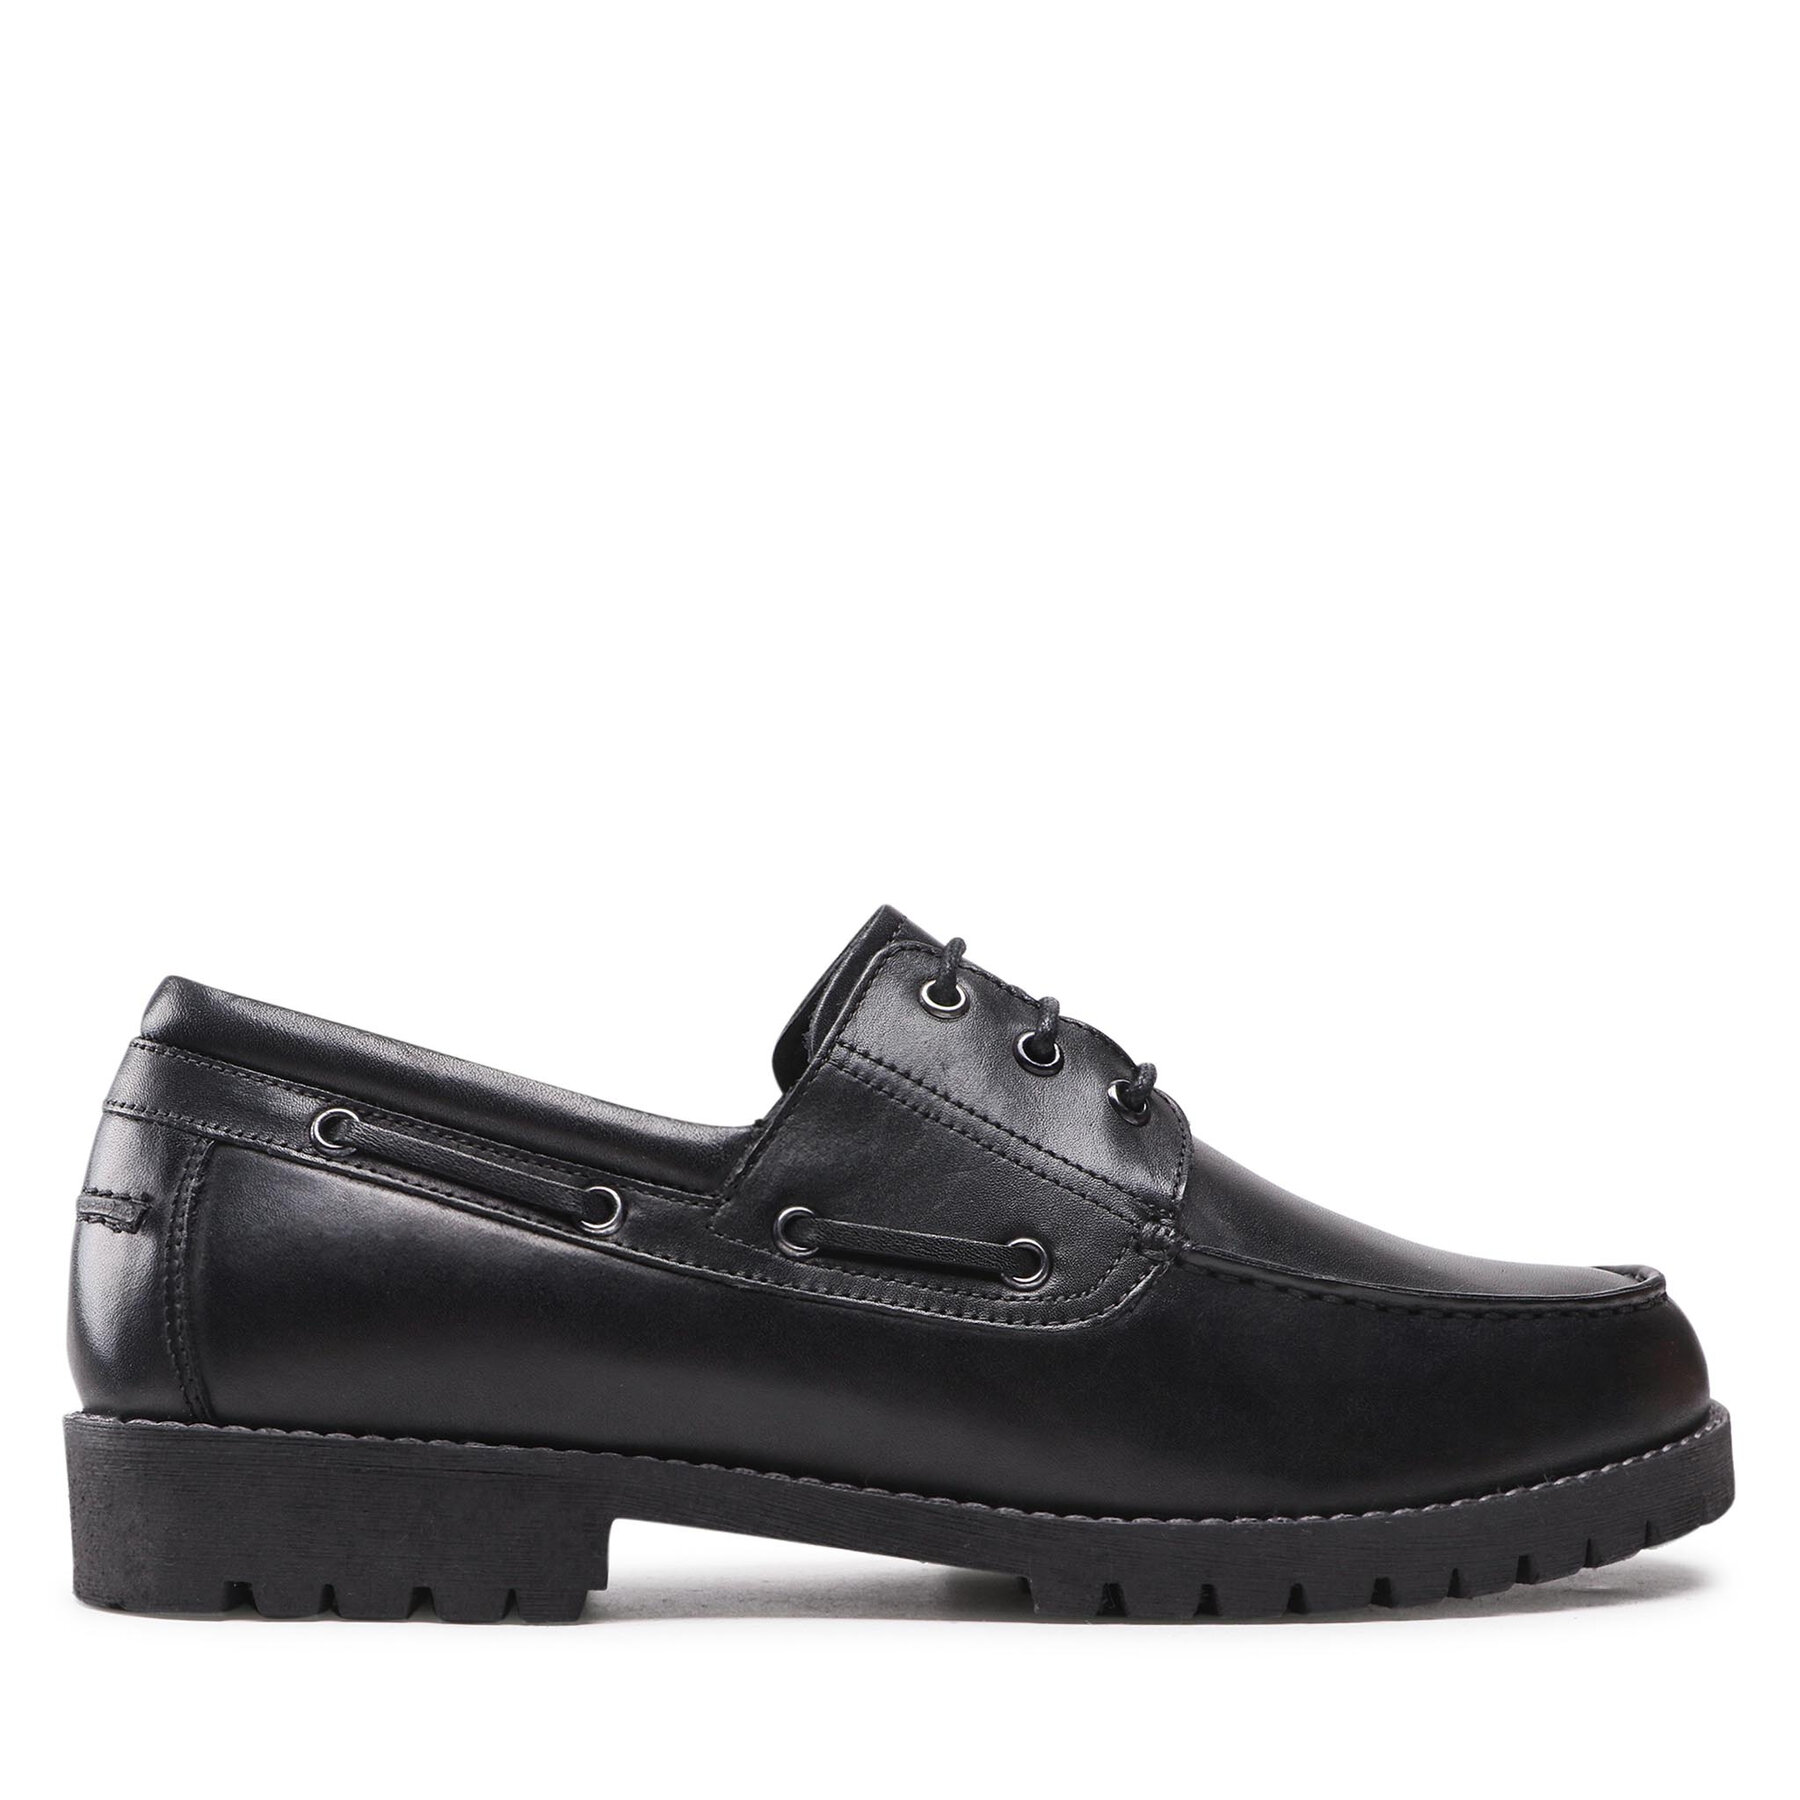 Cipele Lasocki MI07-B261-B97-01 Black